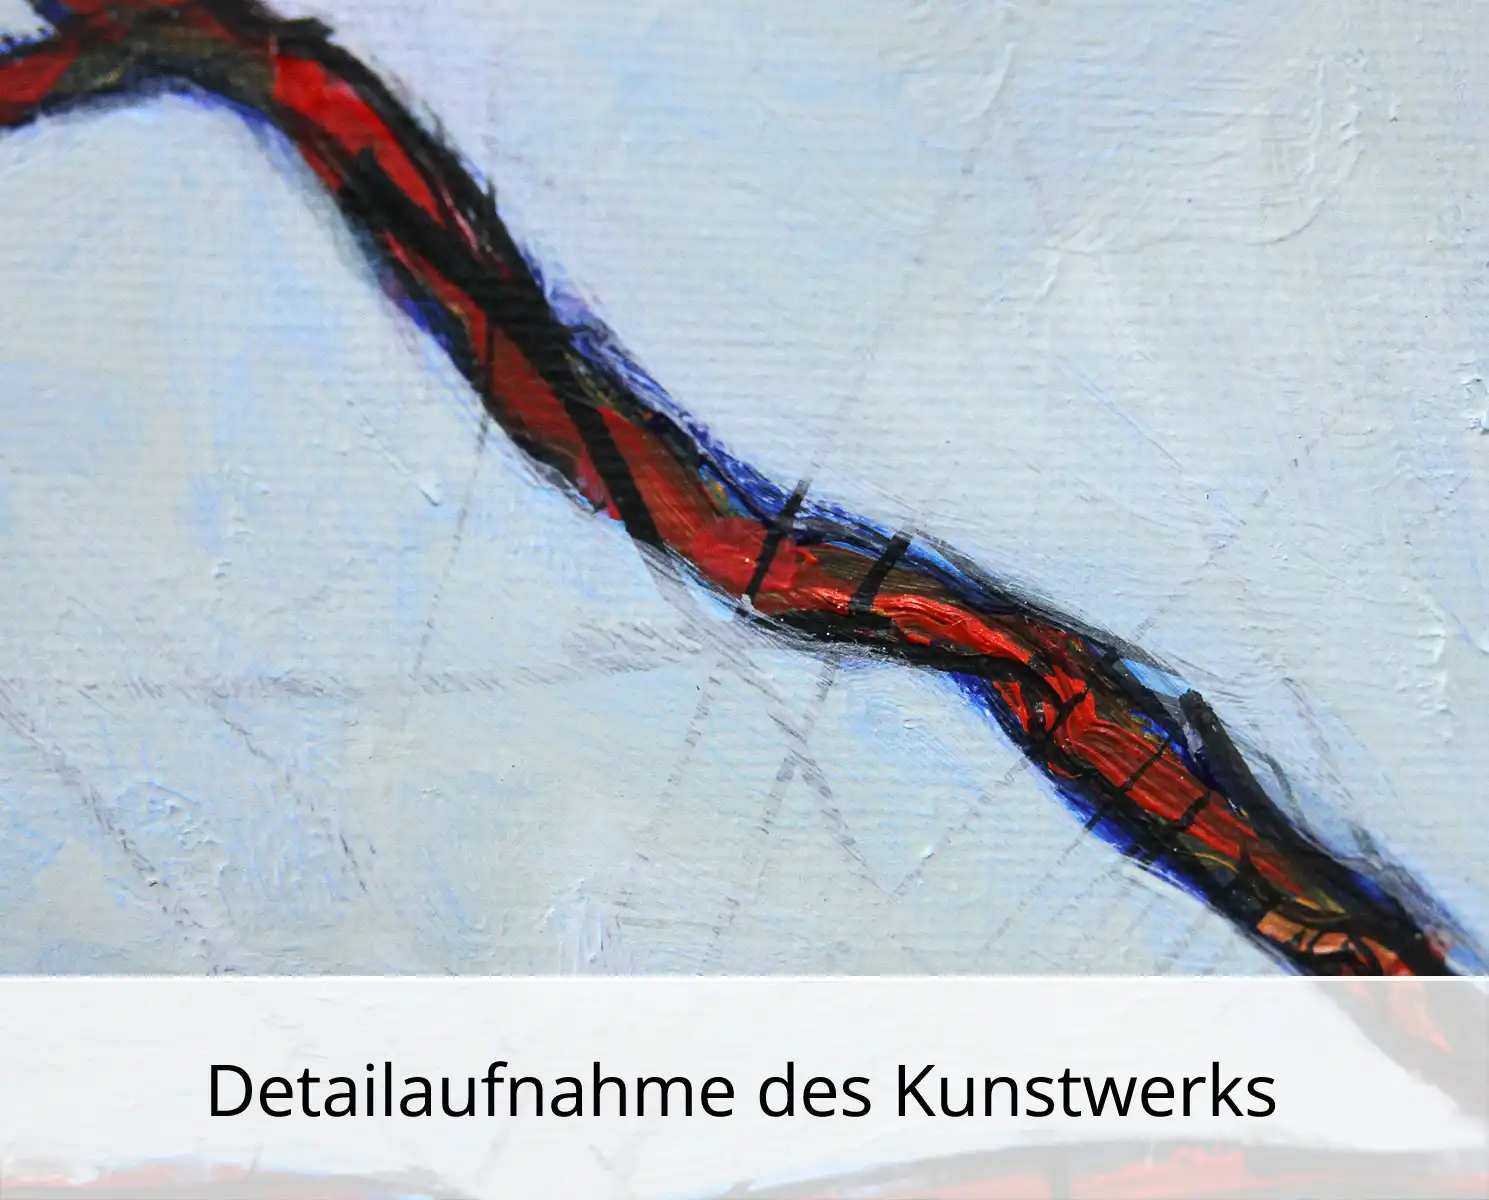 C. Blechschmidt: "Im Riesengebirge", Original/Unikat, zeitgenössisches Ölgemälde